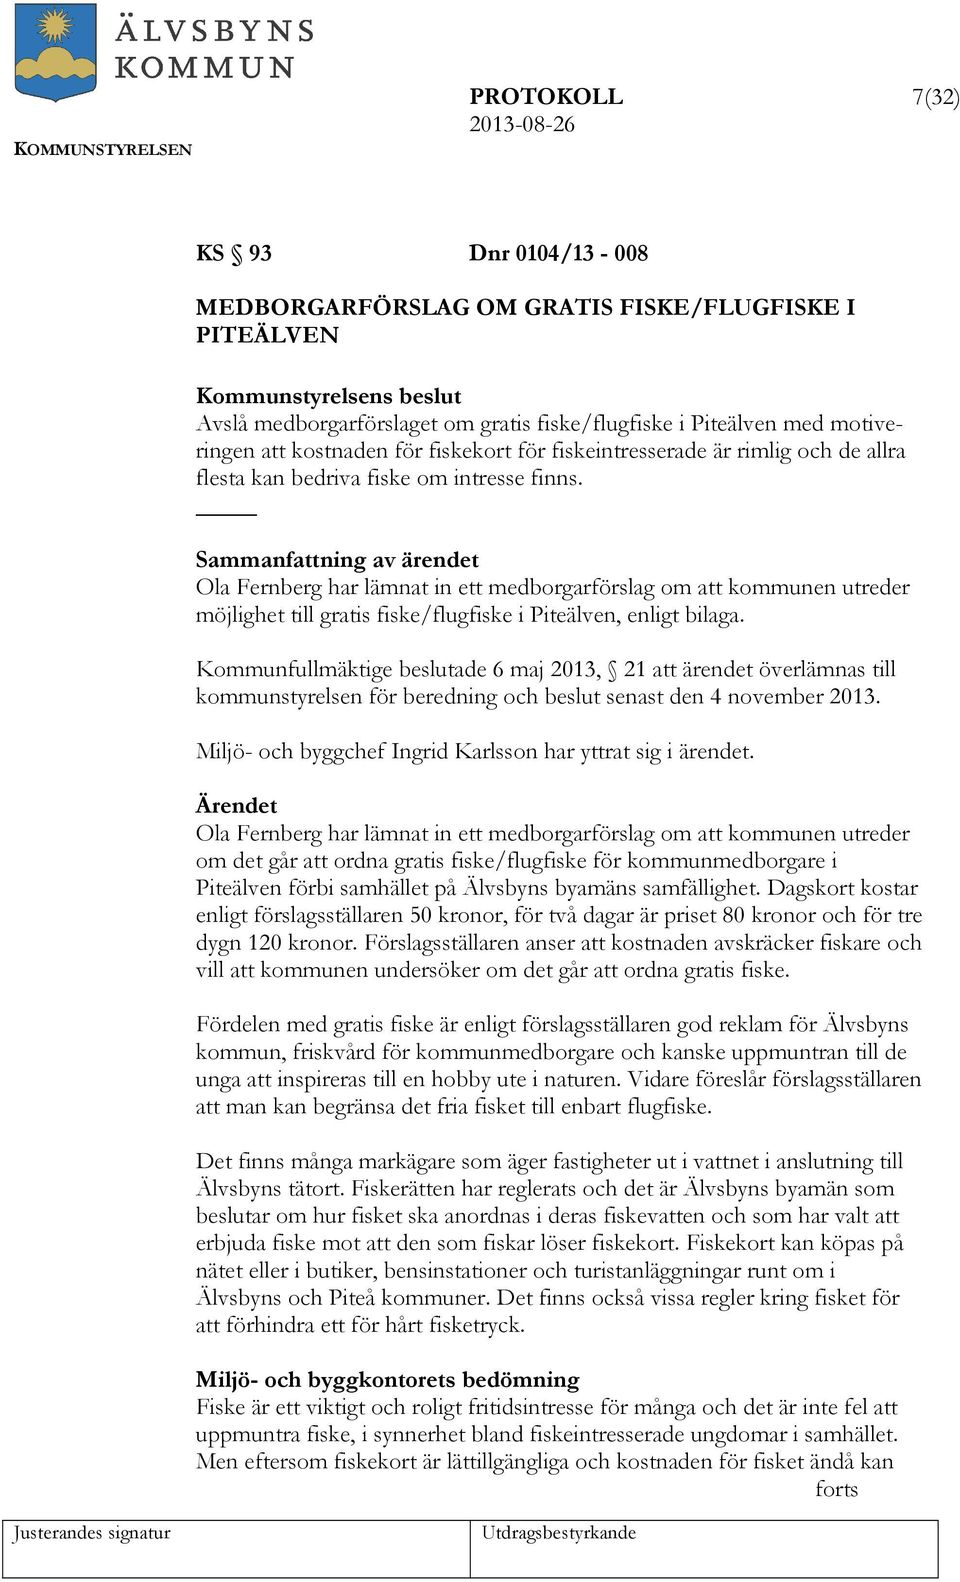 Sammanfattning av ärendet Ola Fernberg har lämnat in ett medborgarförslag om att kommunen utreder möjlighet till gratis fiske/flugfiske i Piteälven, enligt bilaga.